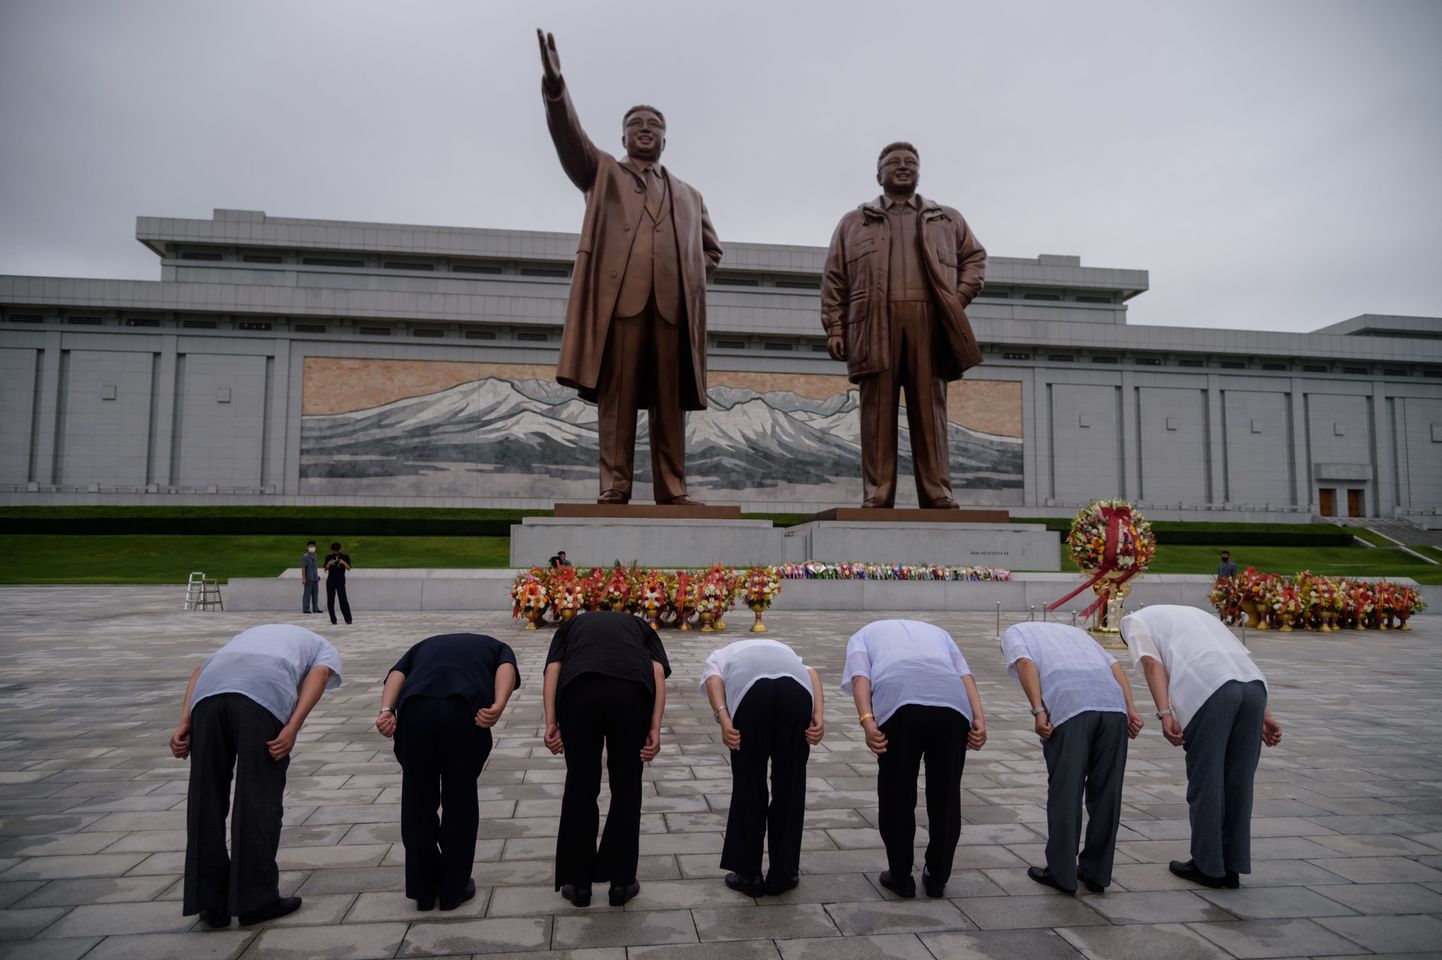 Inimesed kummardamas Pyongyangis Põhja-Korea endiste liidrite Kim Il-sungi ja Kim Jong-ili kujude ees. Foto on illustratiivne.